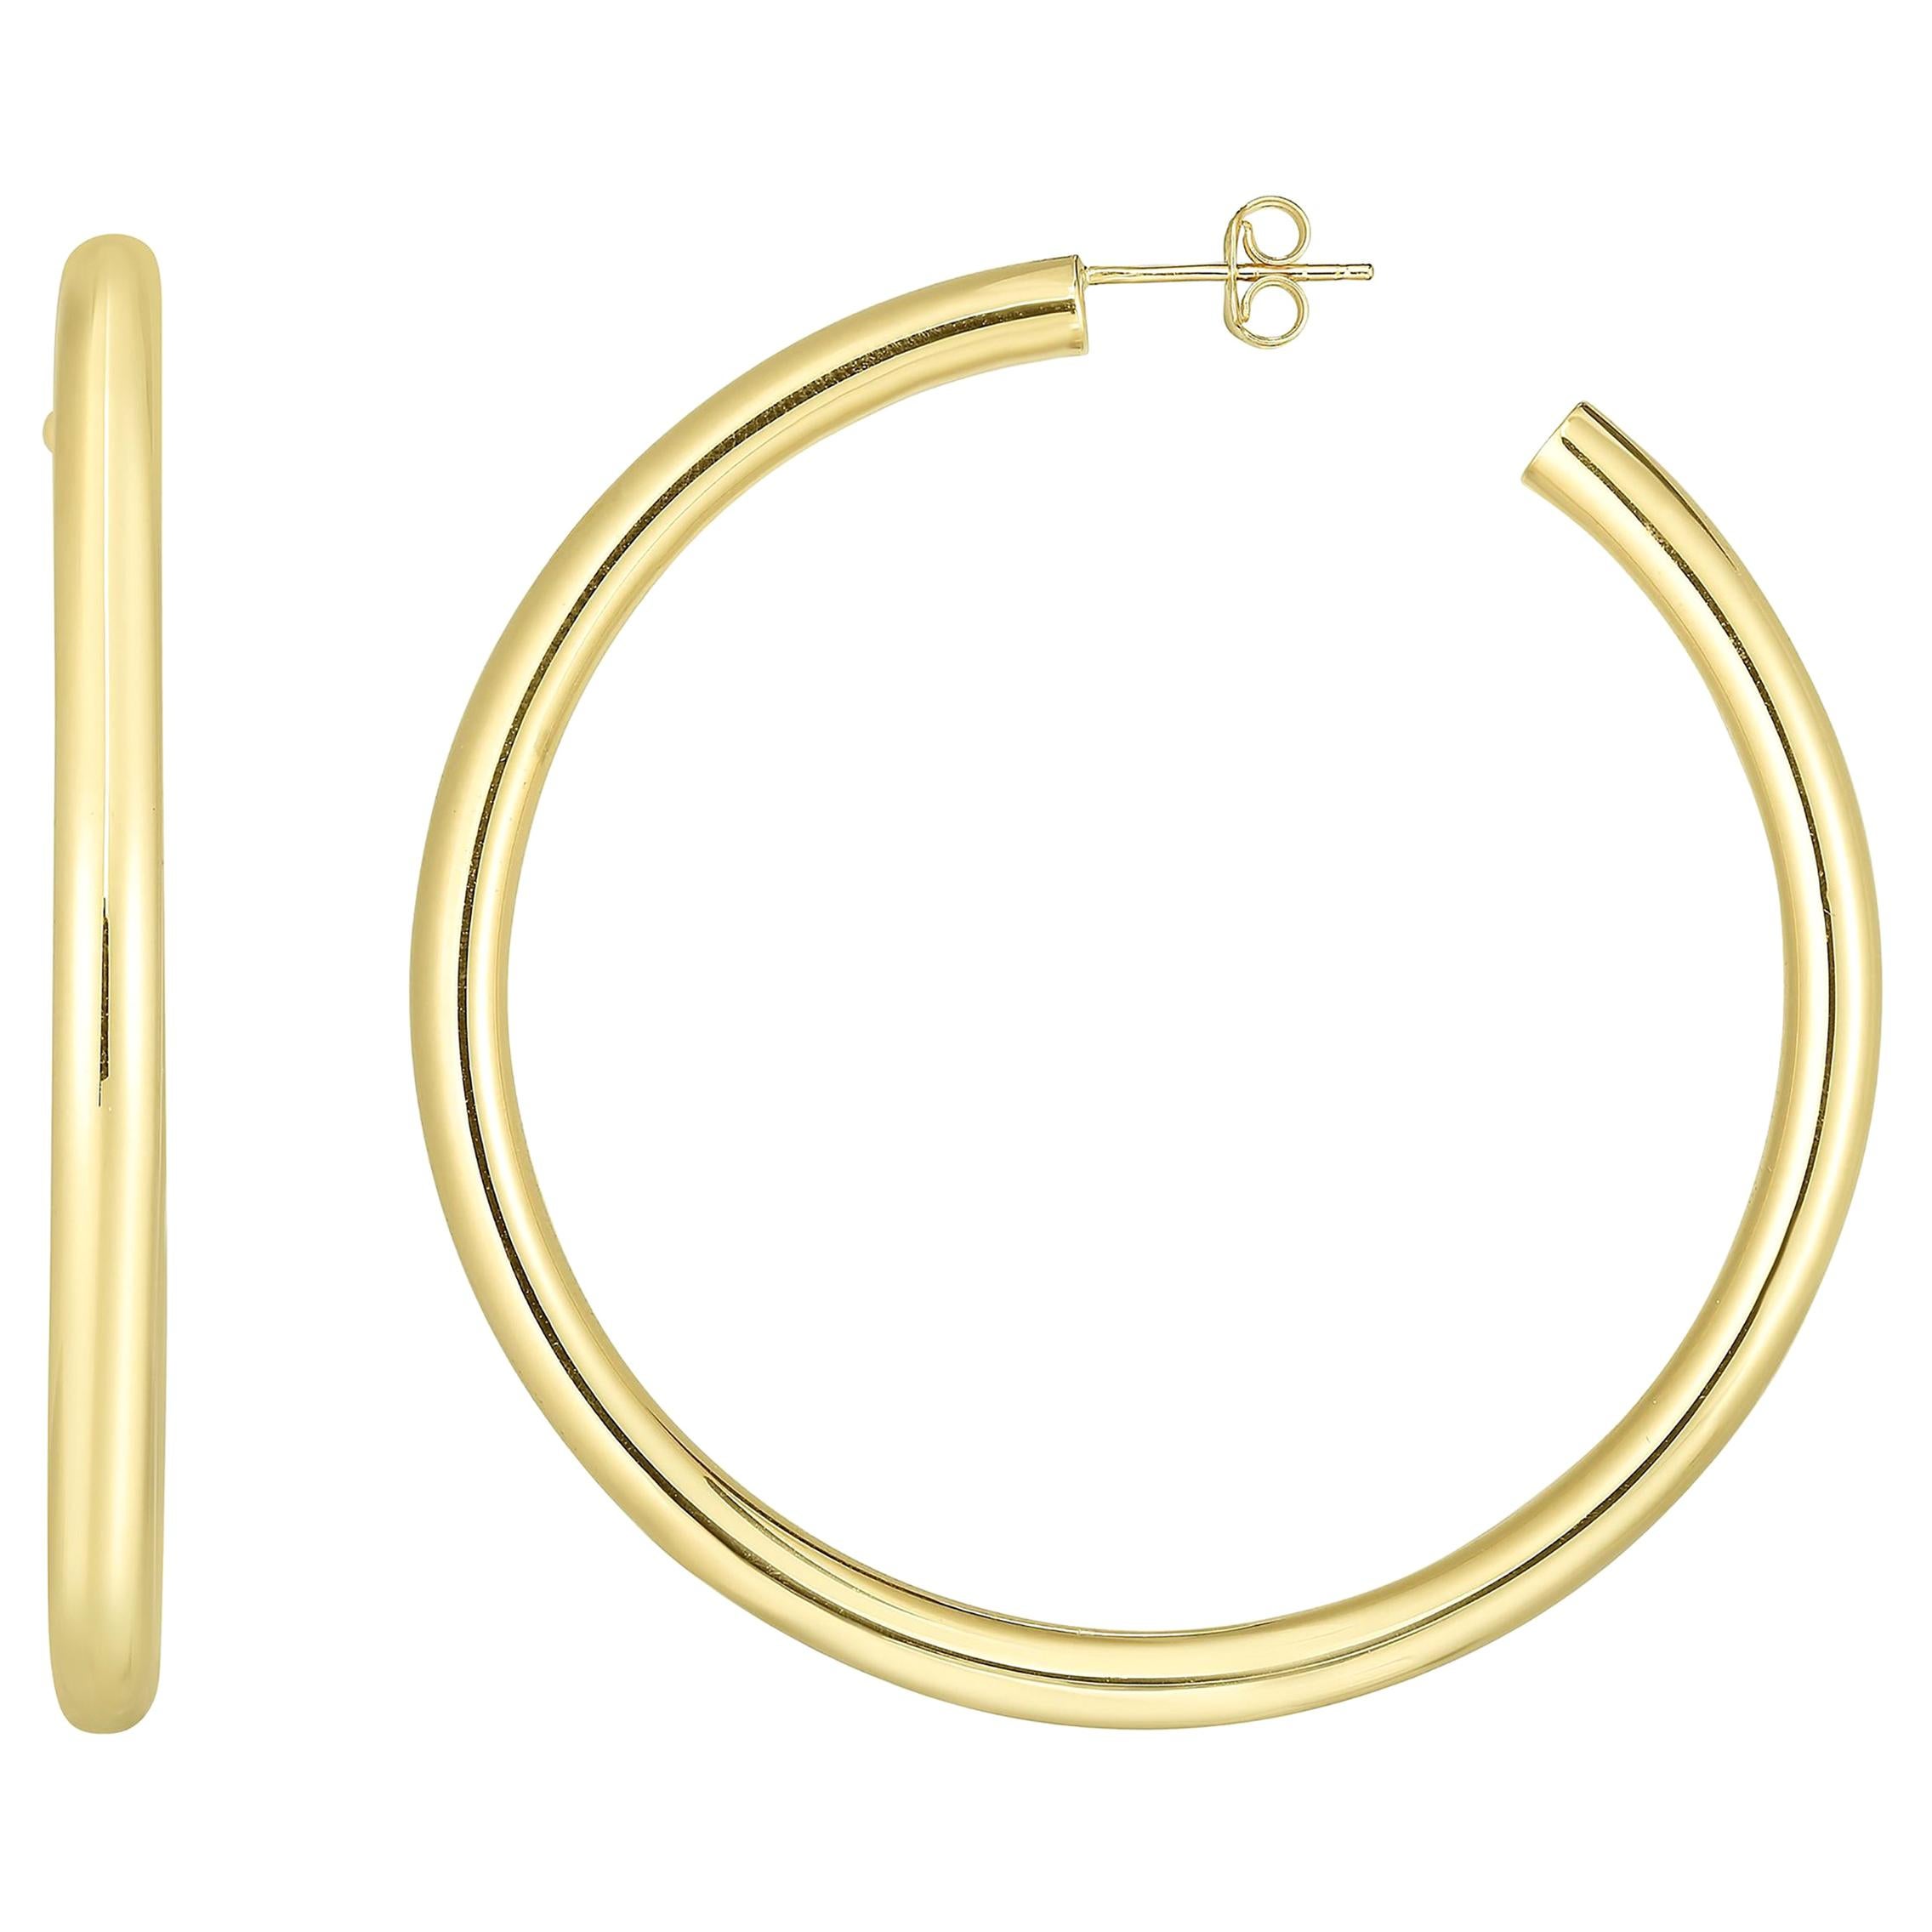 Large Yellow Gold Hoop Earrings 2.25 Inch Diameter 4 Millimeter Width